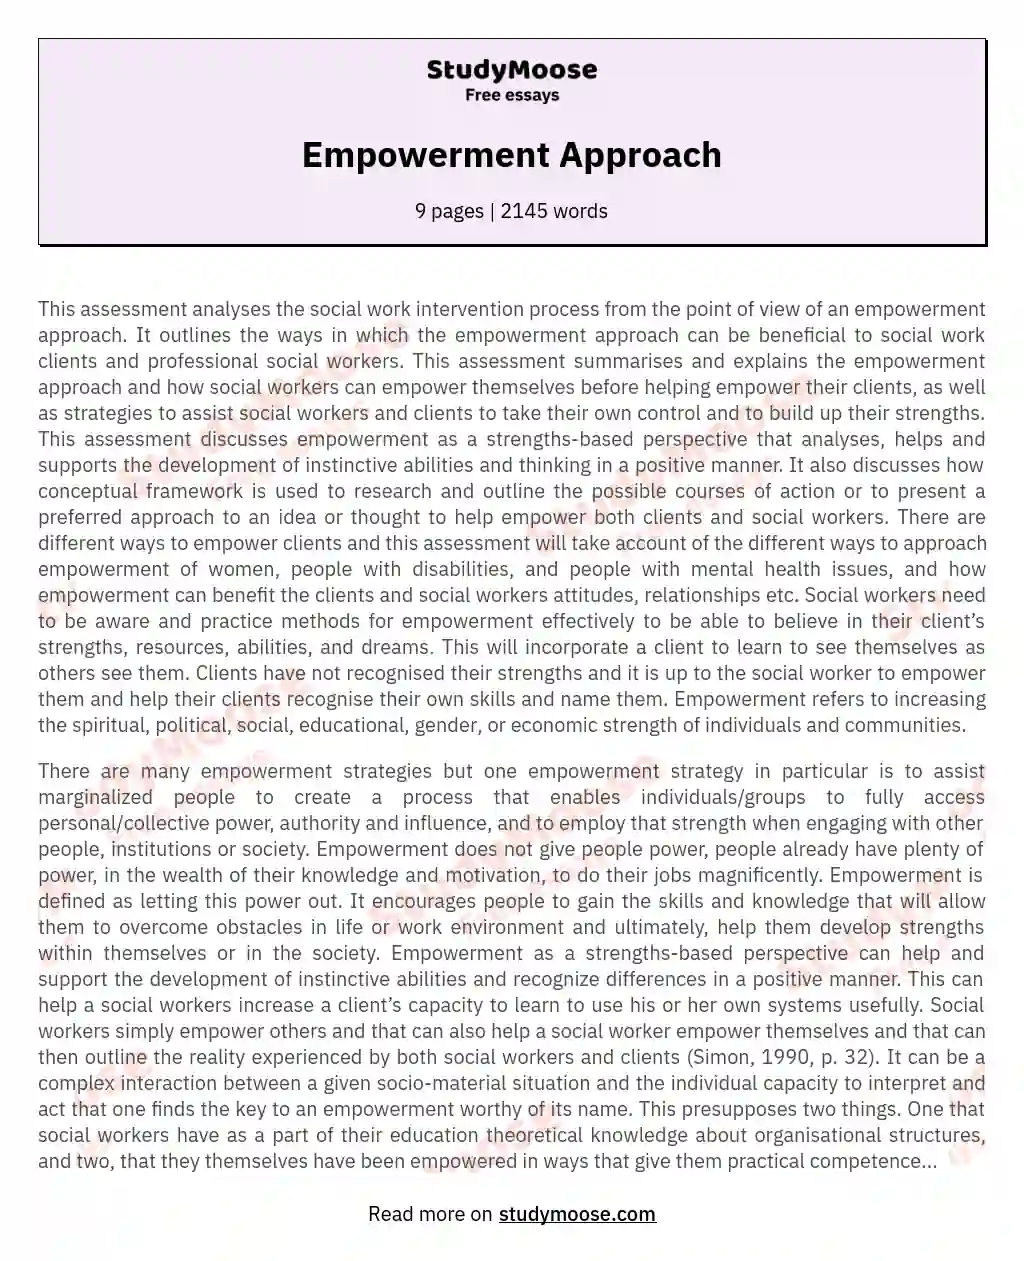 Empowerment Approach essay